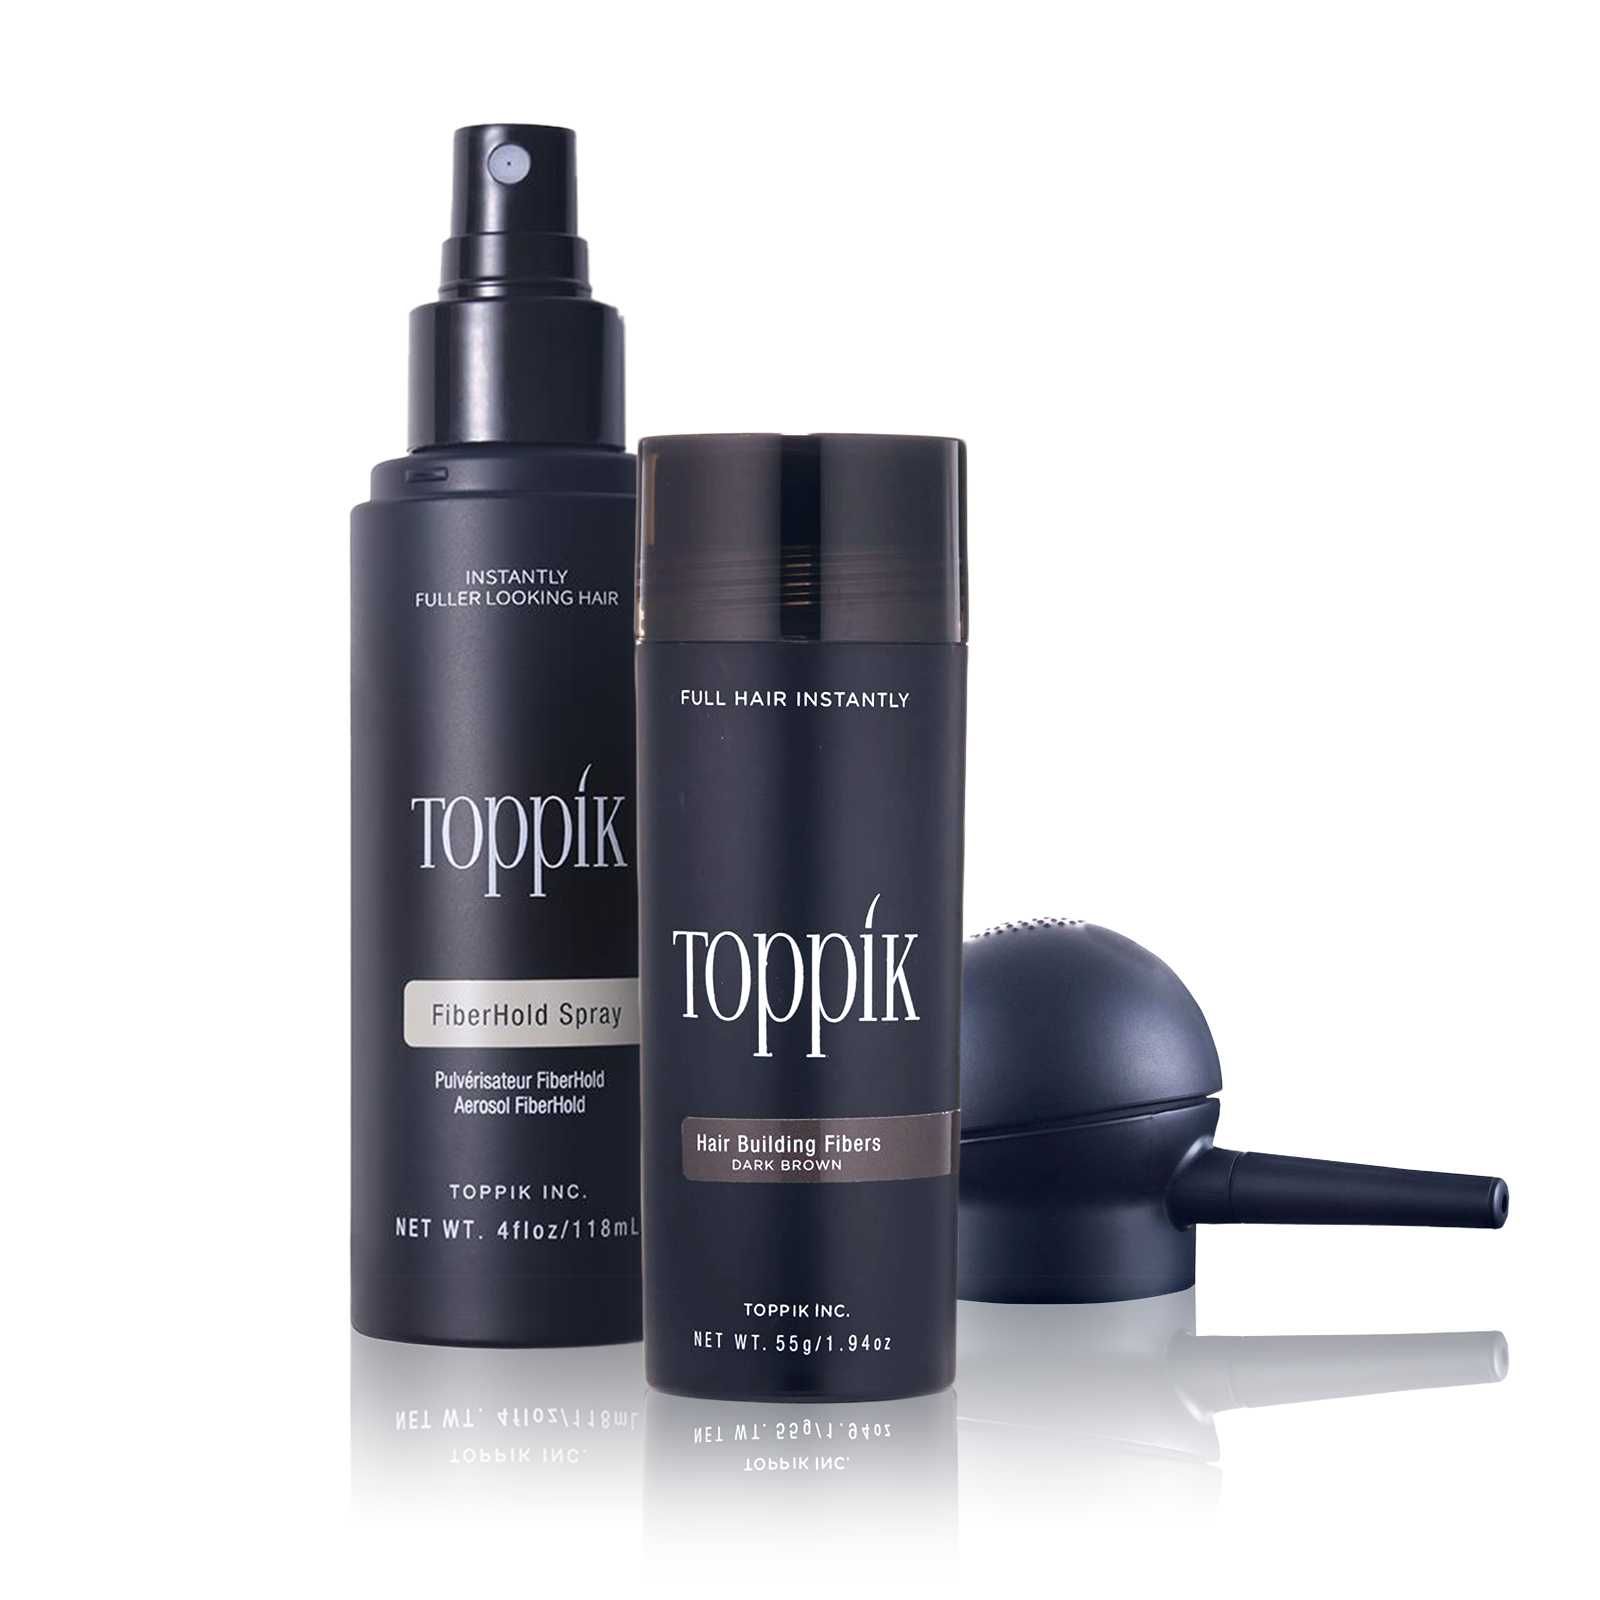 TOPPIK - Fibras capilares para queda e falhas de cabelo / calvice